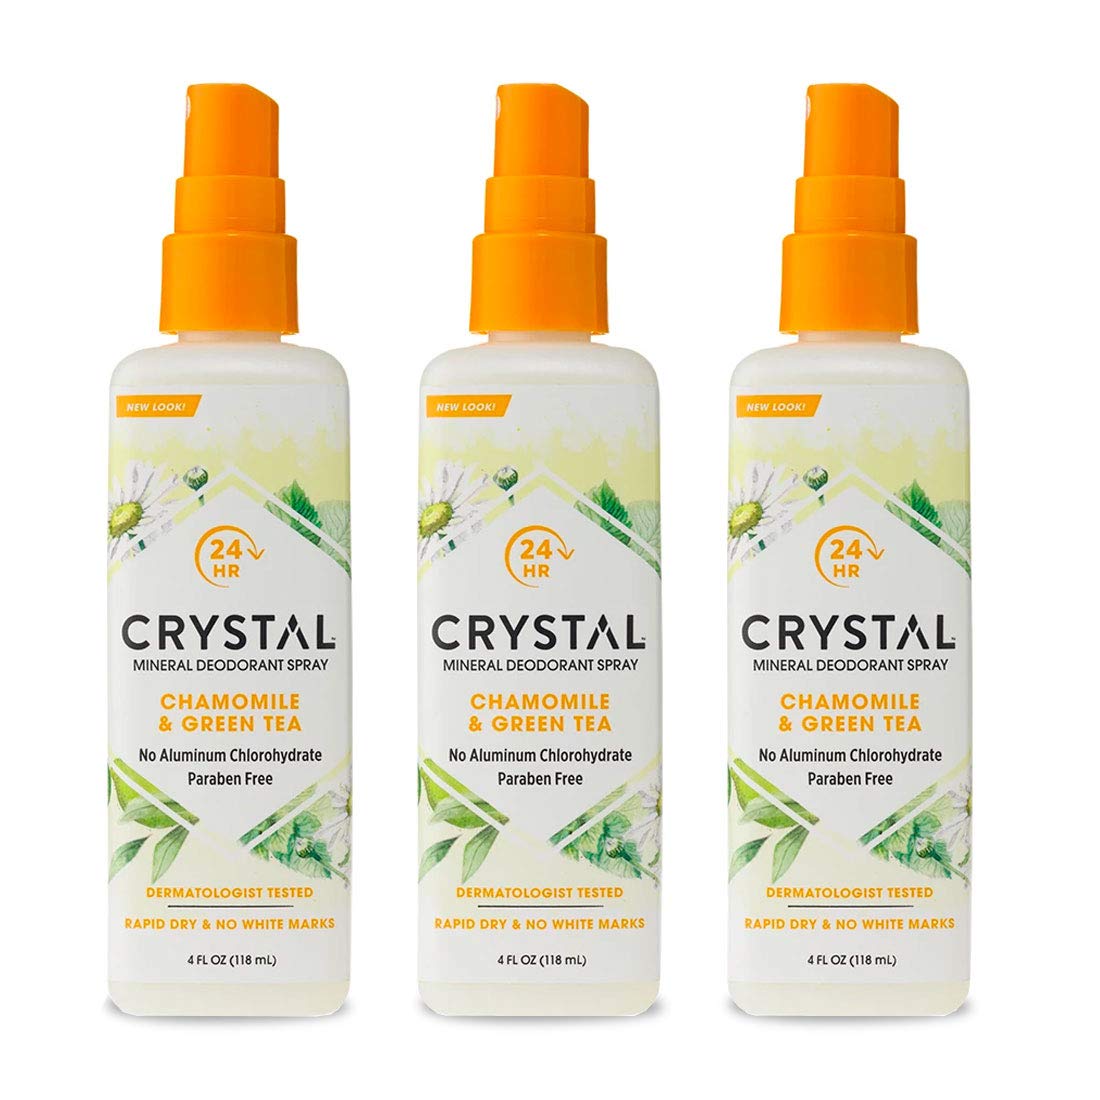 Crystal Deodorant Essence Spray 4 Ounce Chamomile/Green Tea, All Over Body Deodorant, (118ml) (3 Pack)